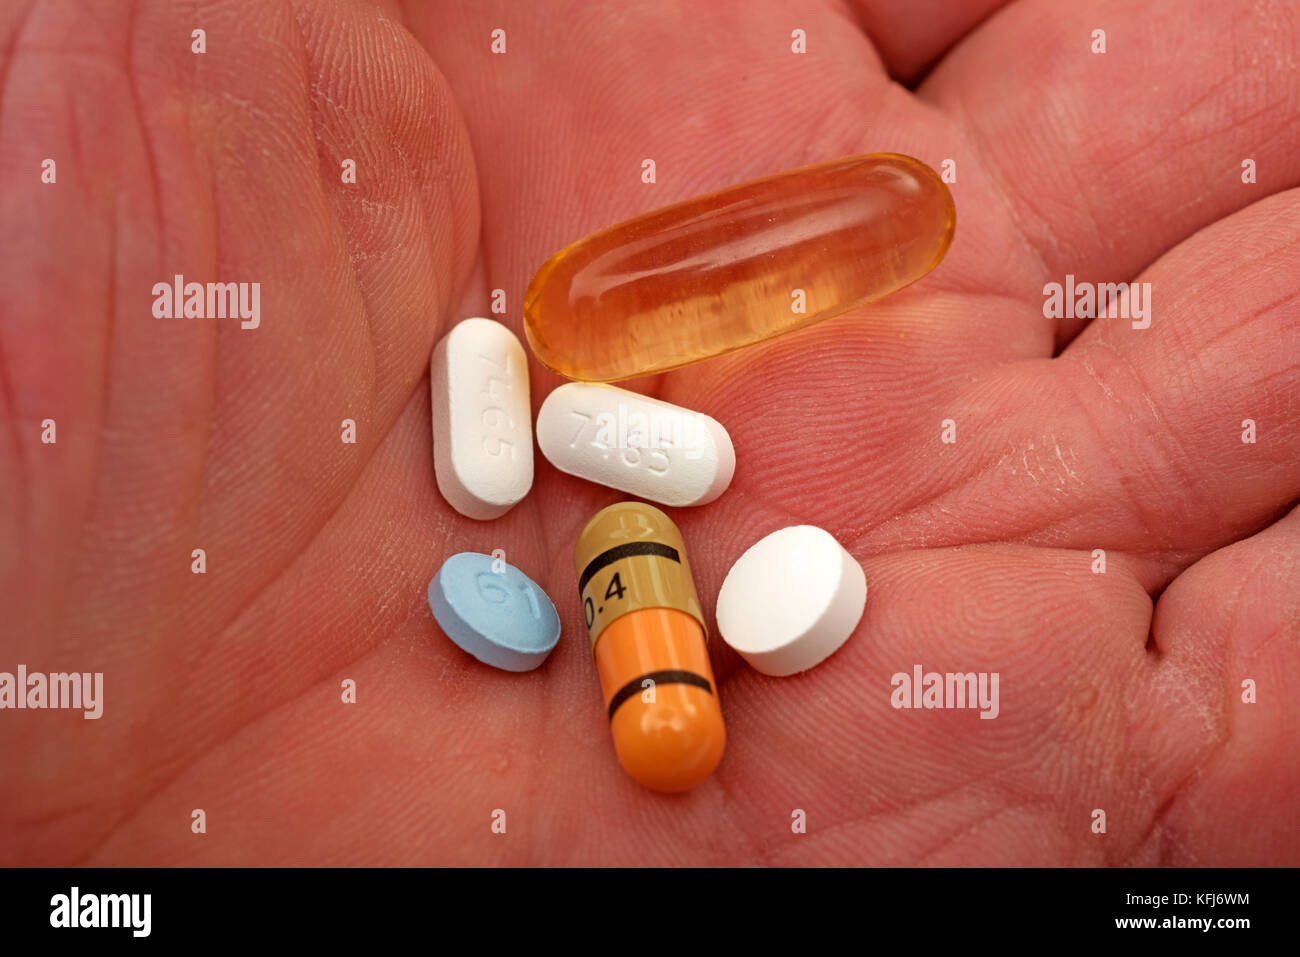 La dosis diaria de pastillas en la mano del anciano Foto de stock